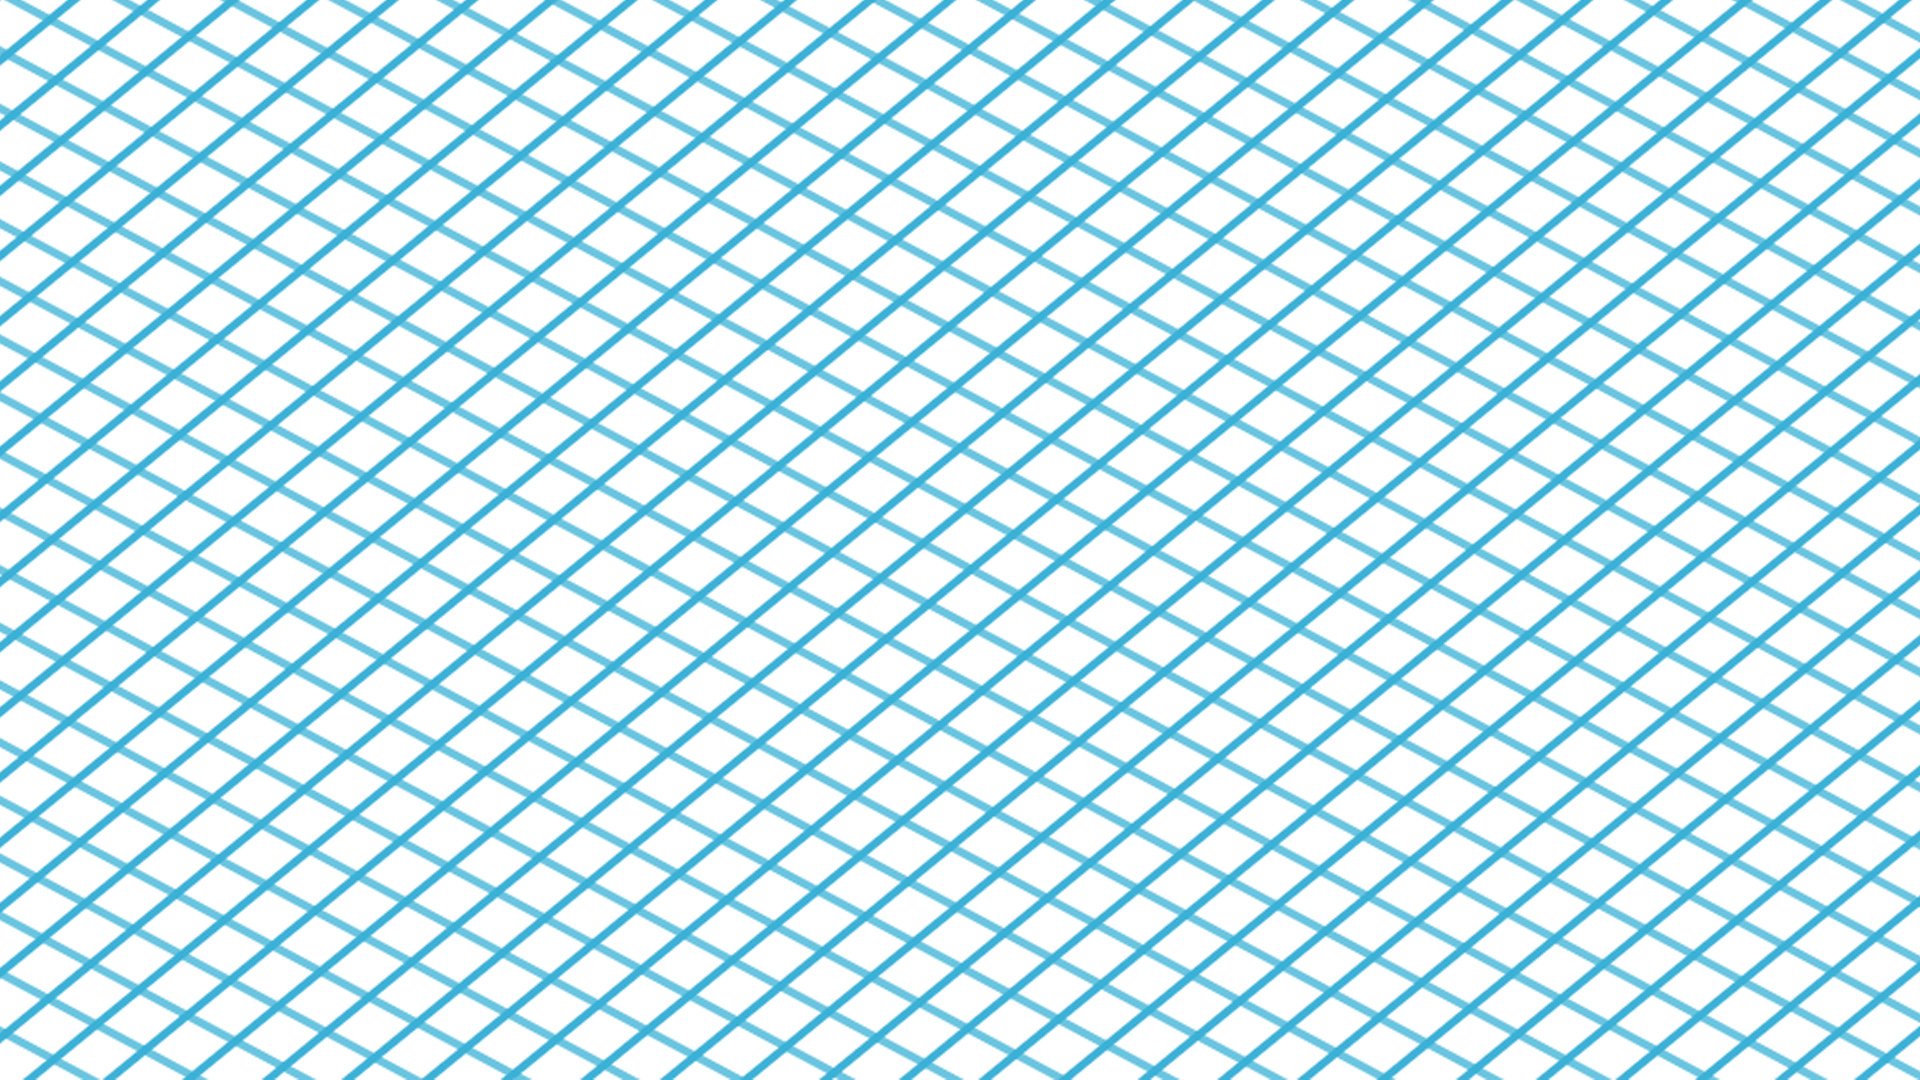 Blue Lines 高清壁纸 桌面背景 1920x1080 Id 1000062 Wallpaper Abyss